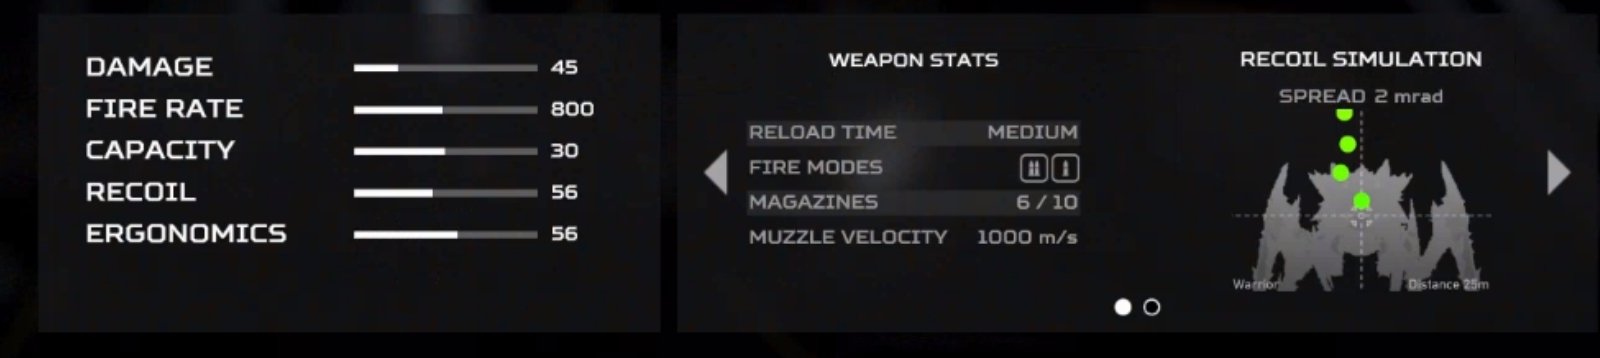 《绝地潜兵2》武器显示4项属性 实际多达50项！